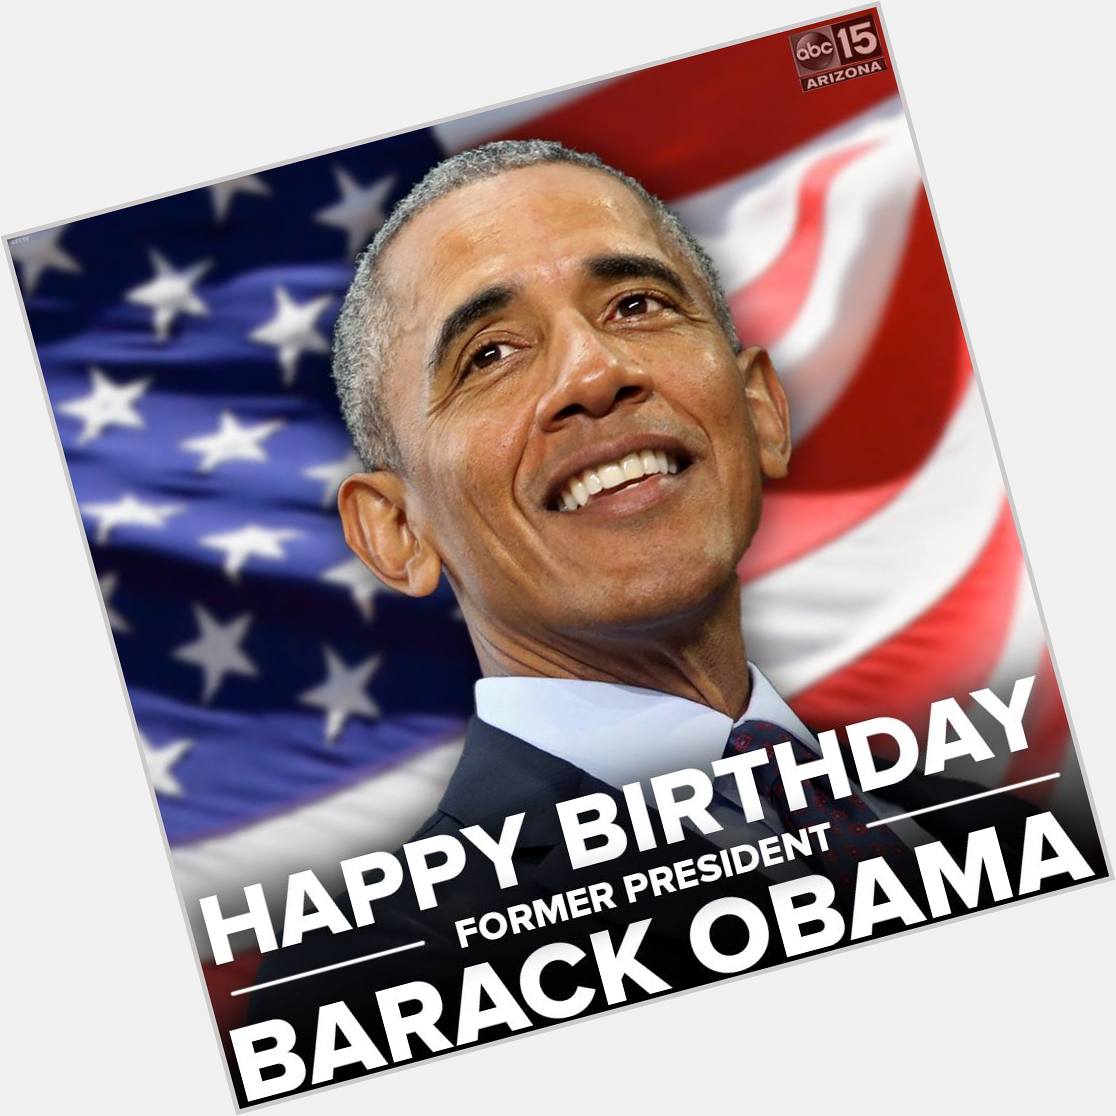 Happy Birthday! Former President Barack Obama turns 59 today. 